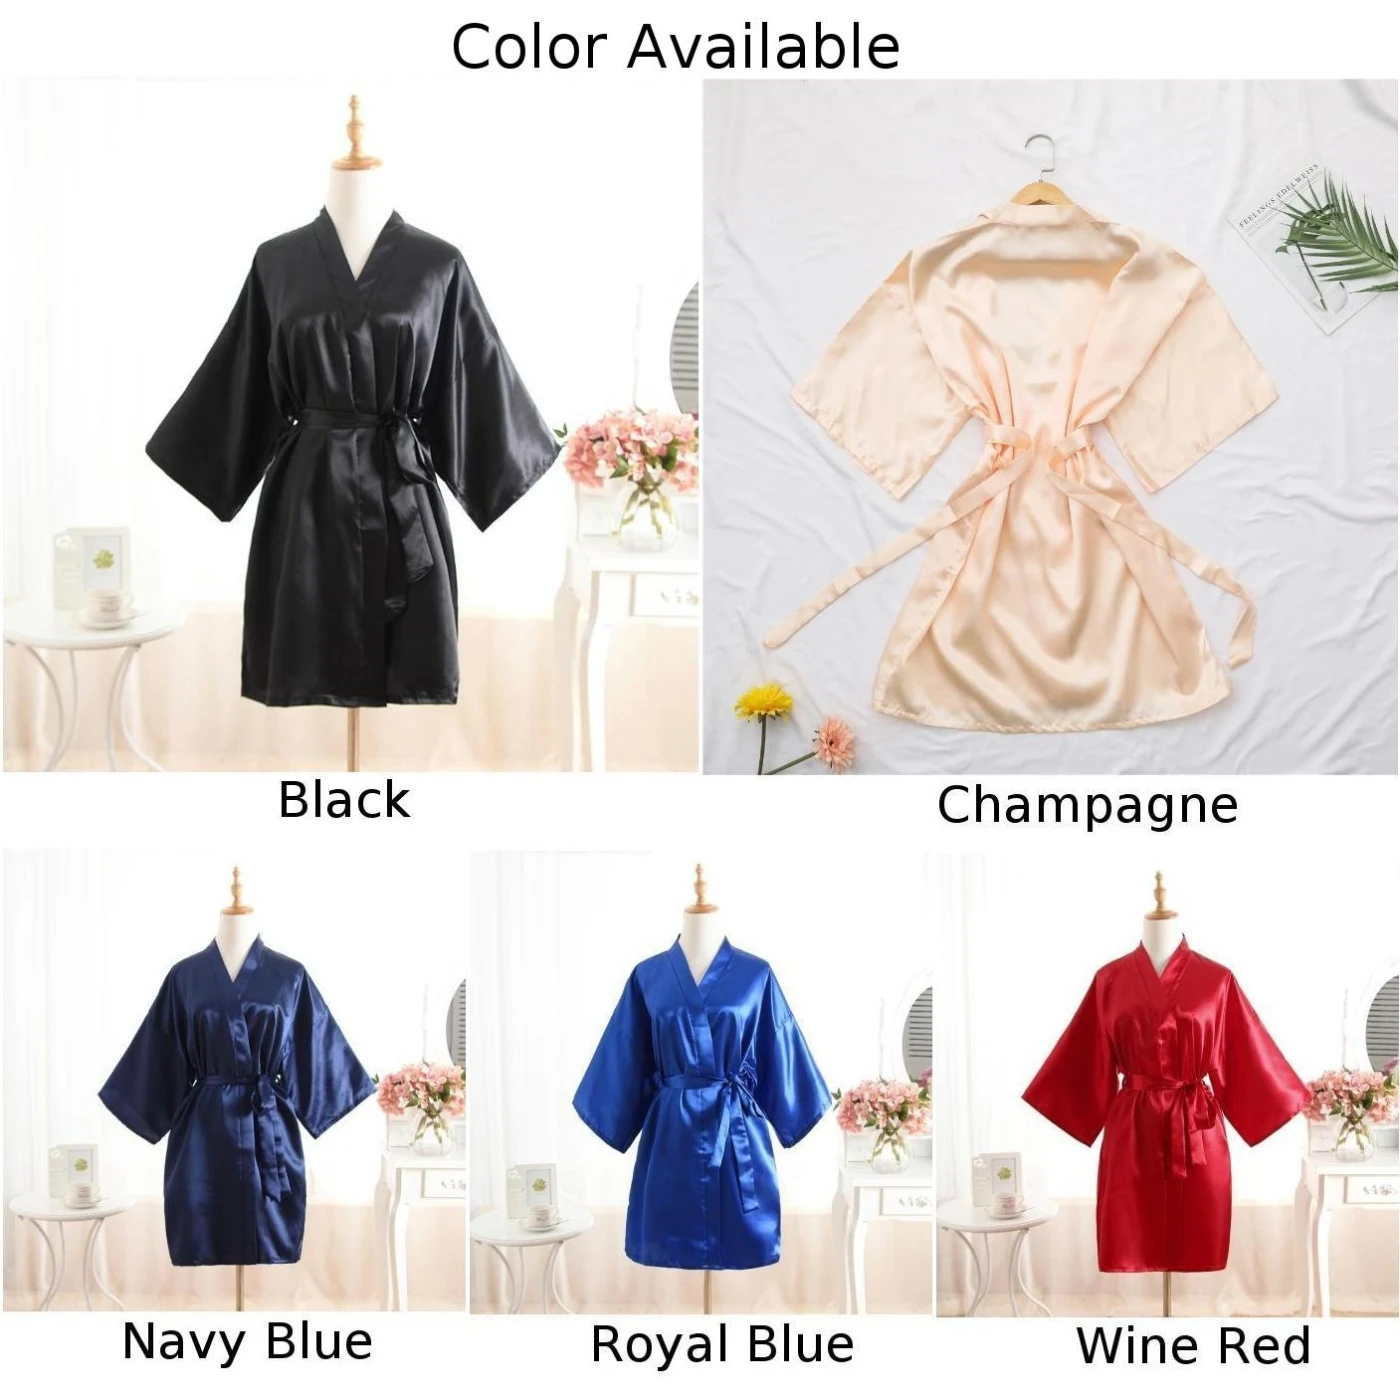 

RB032 2018 New Silk Kimono Robe Bathrobe Women Silk Bridesmaid Robes Sexy Navy Blue Robes Satin Robe Ladies Dressing Gowns